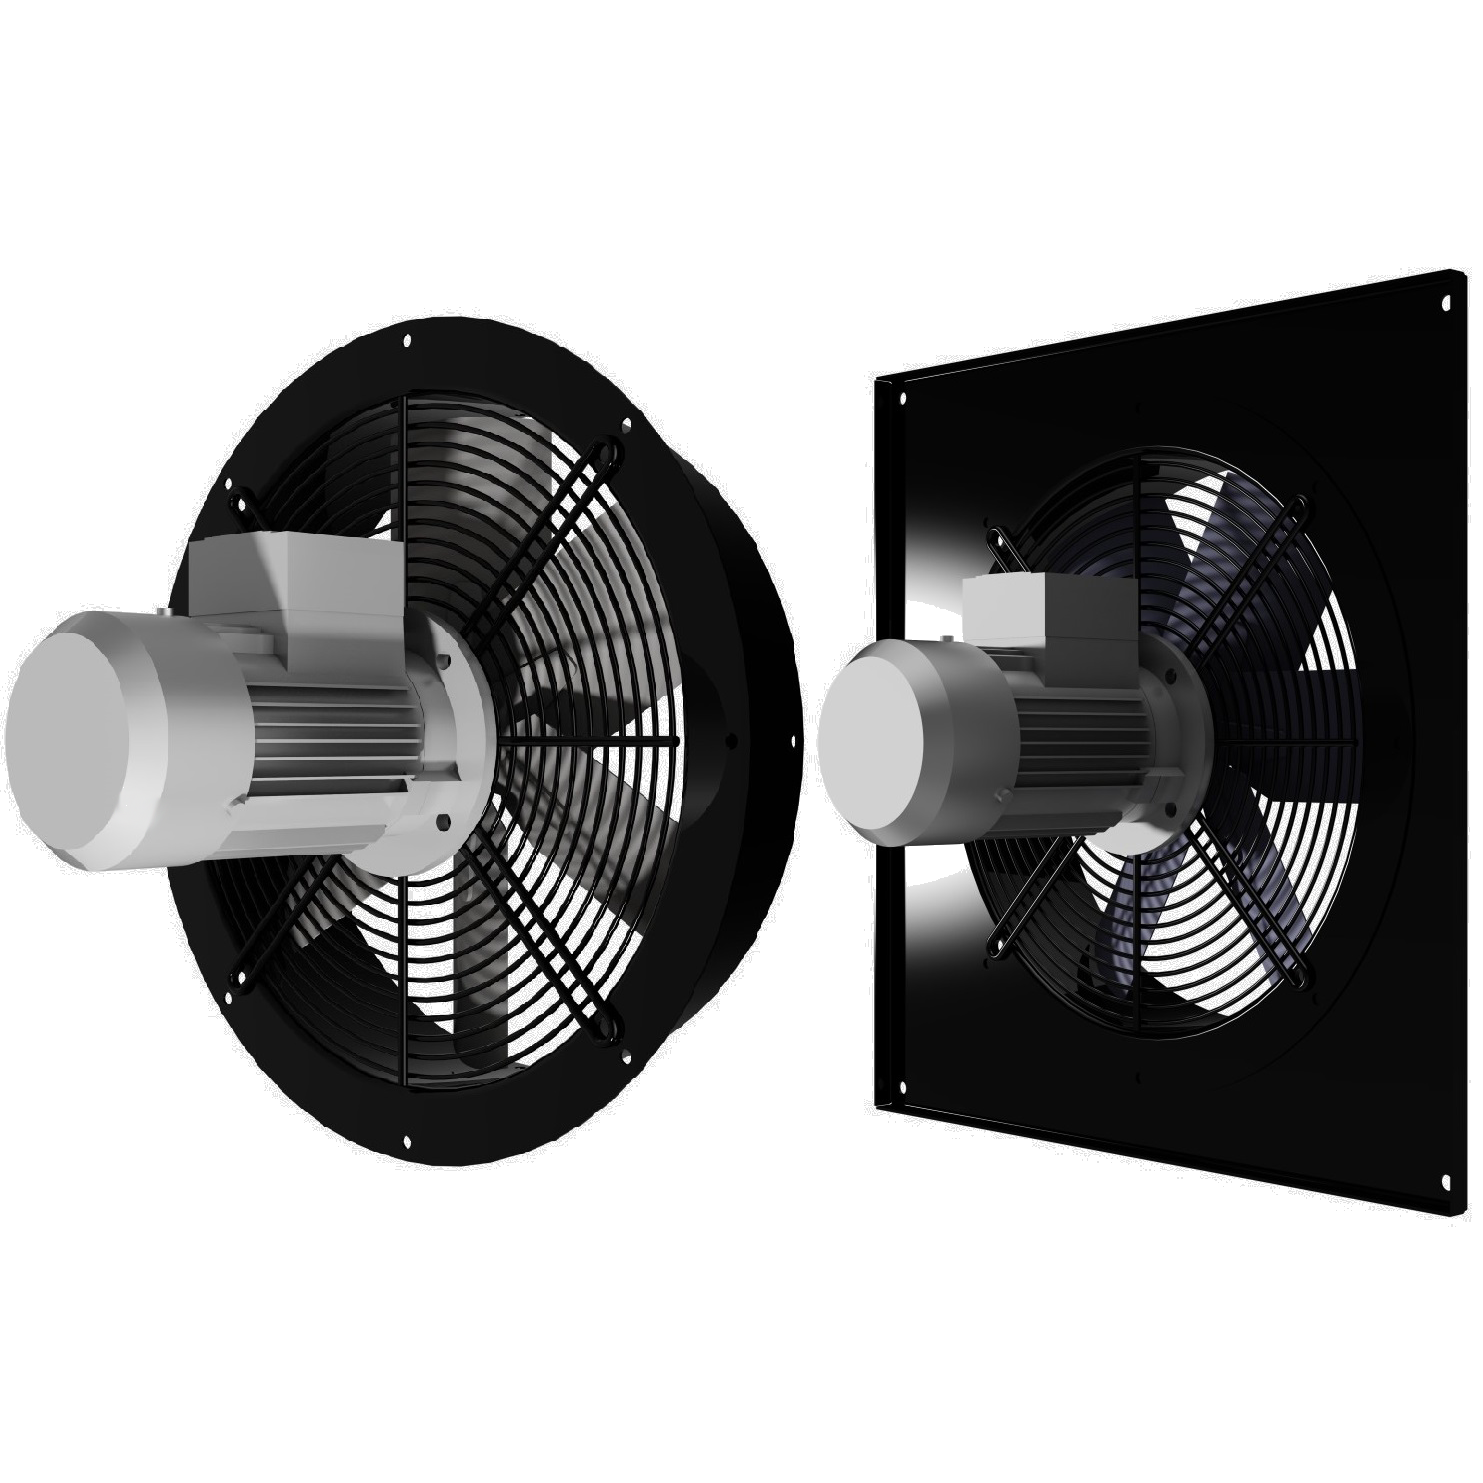 Осевой приточный вентилятор. Axial Fan вентилятор. Осевые вентиляторы для вытяжной вентиляции 630. Вентилятор промышленный (100лд;Vents). Вентилятор вытяжной промышленный vbs100.